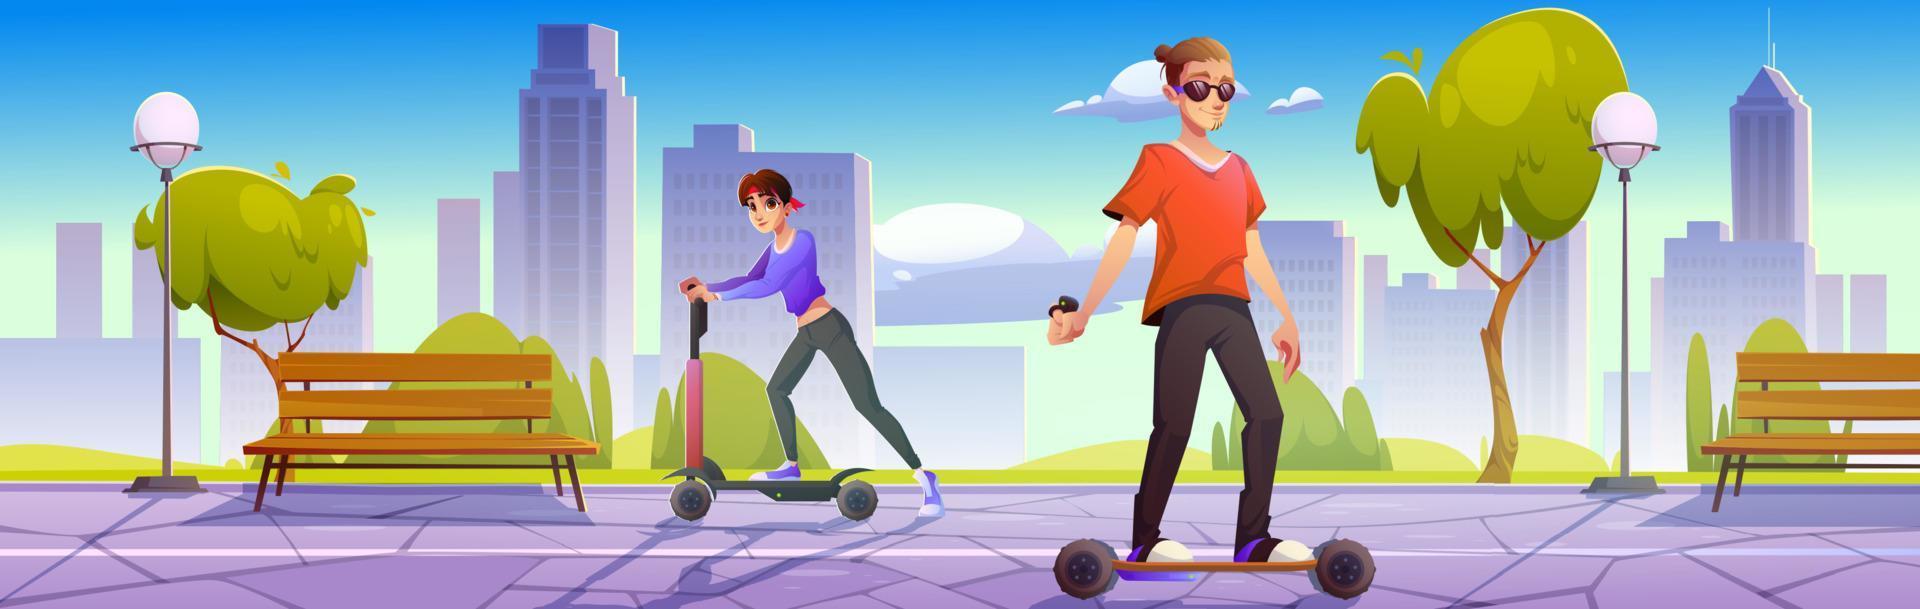 mensen Aan elektrisch scooter en skateboard in park vector